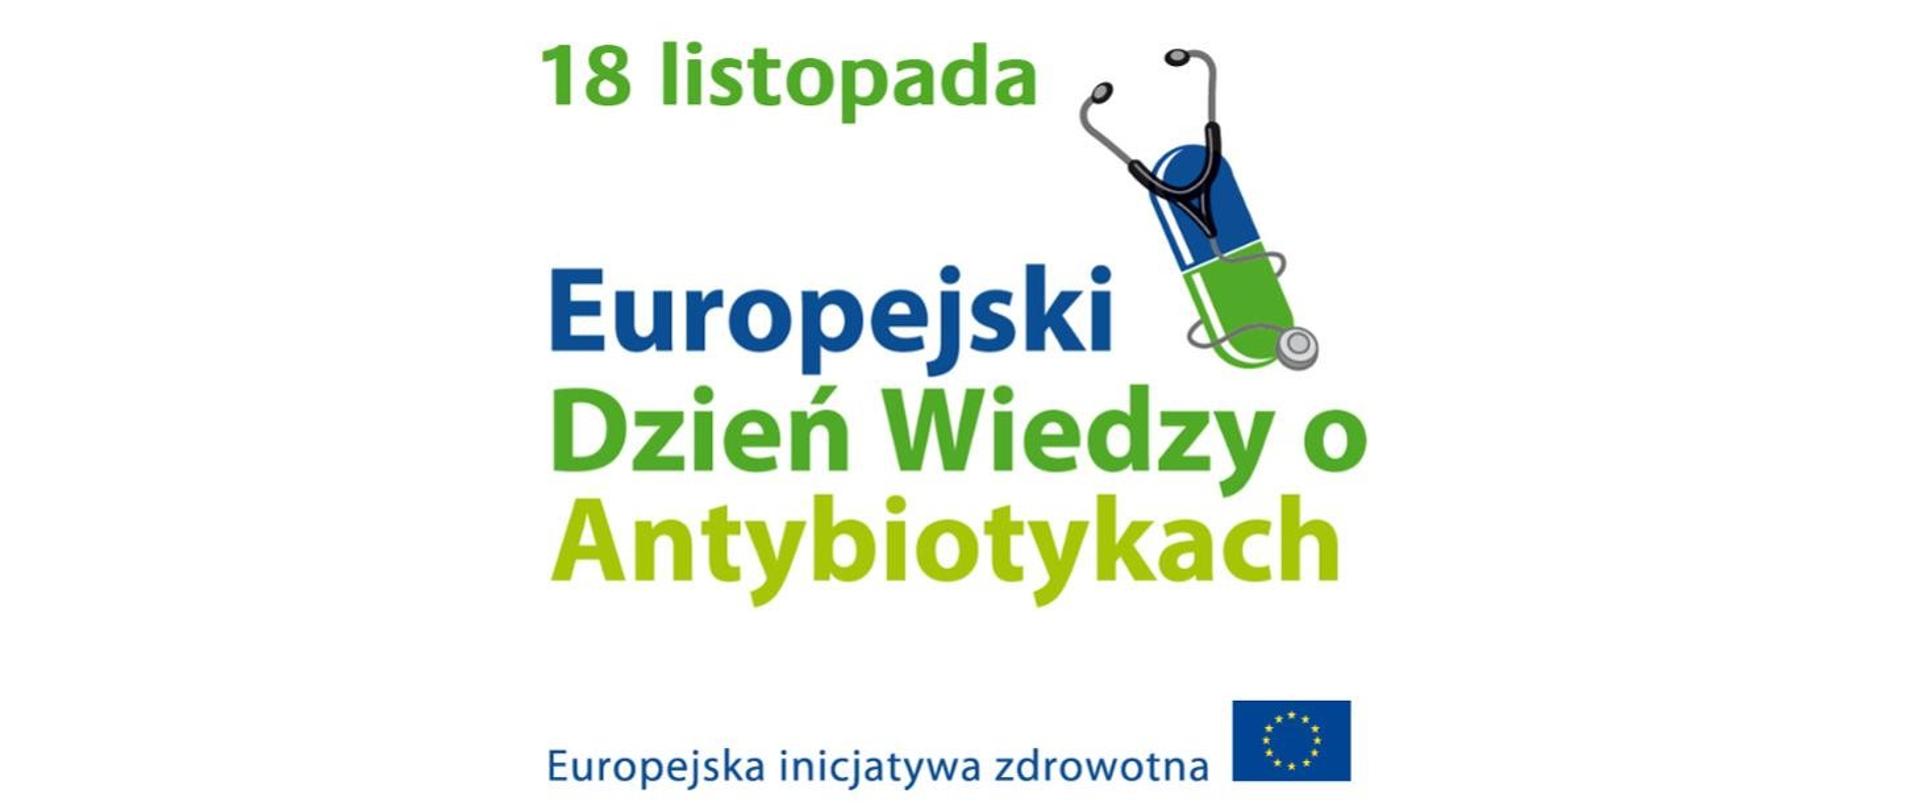 Europejski Dzień Wiedzy o Antybiotykach i Światowy Tydzień Wiedzy o Antybiotykach